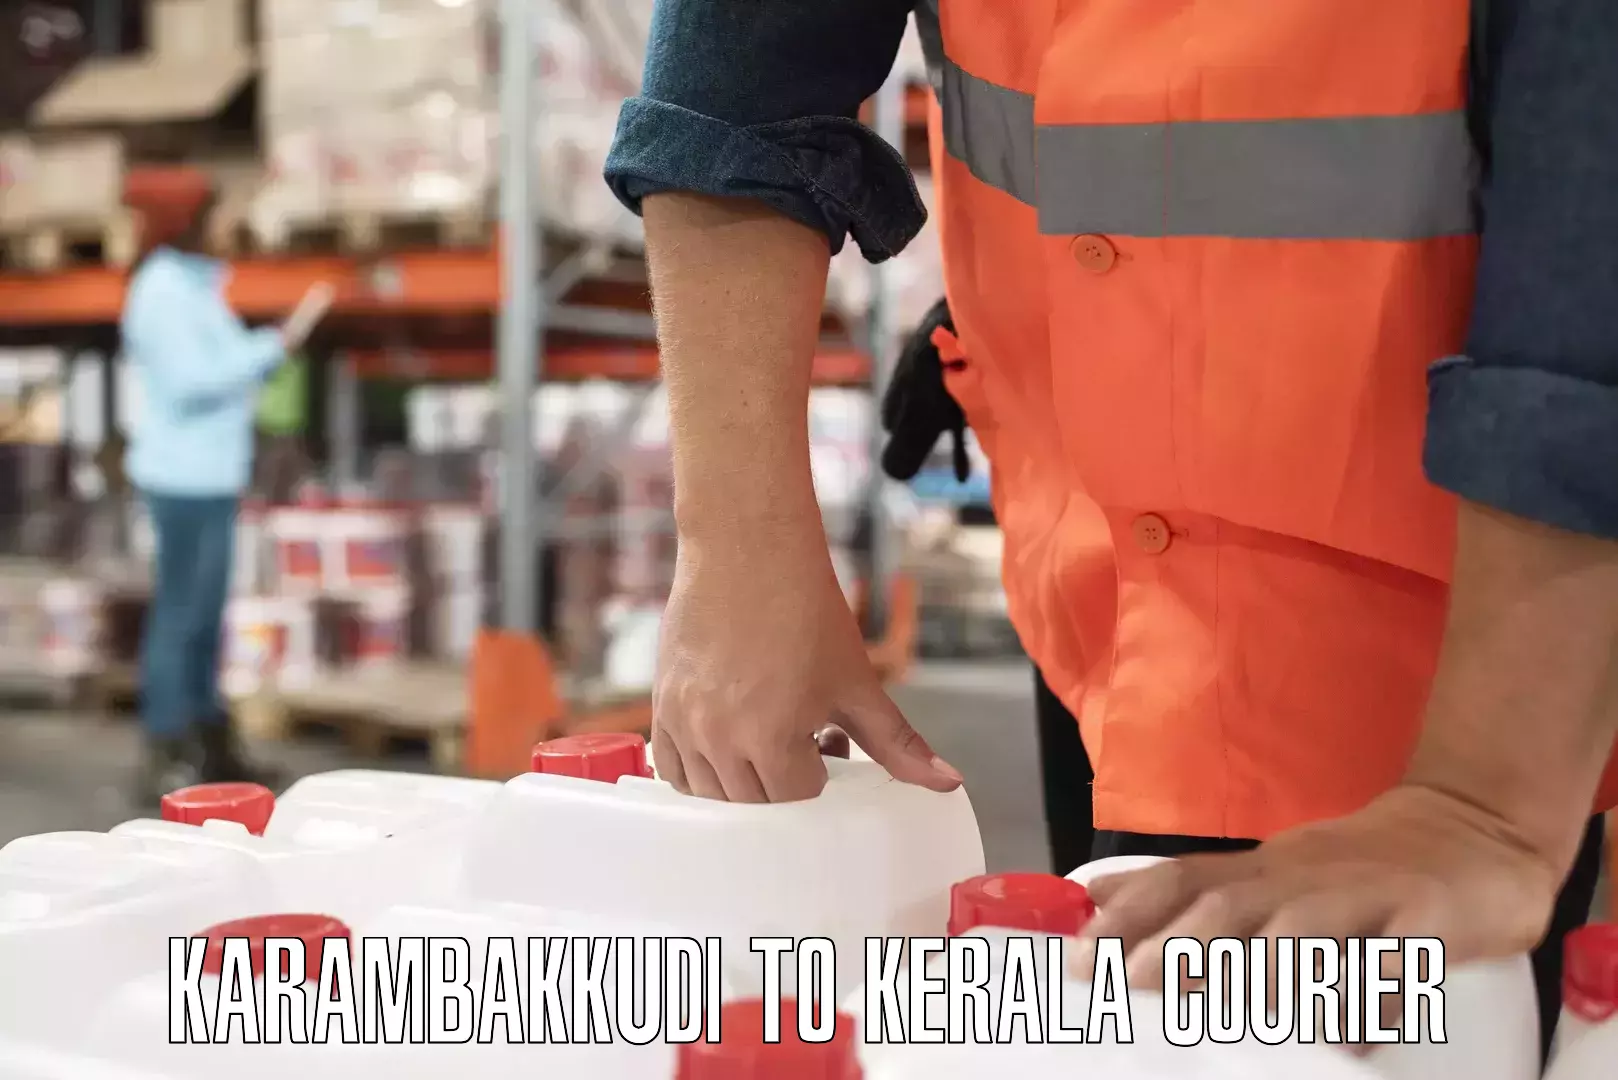 Multi-service courier options Karambakkudi to Kallachi